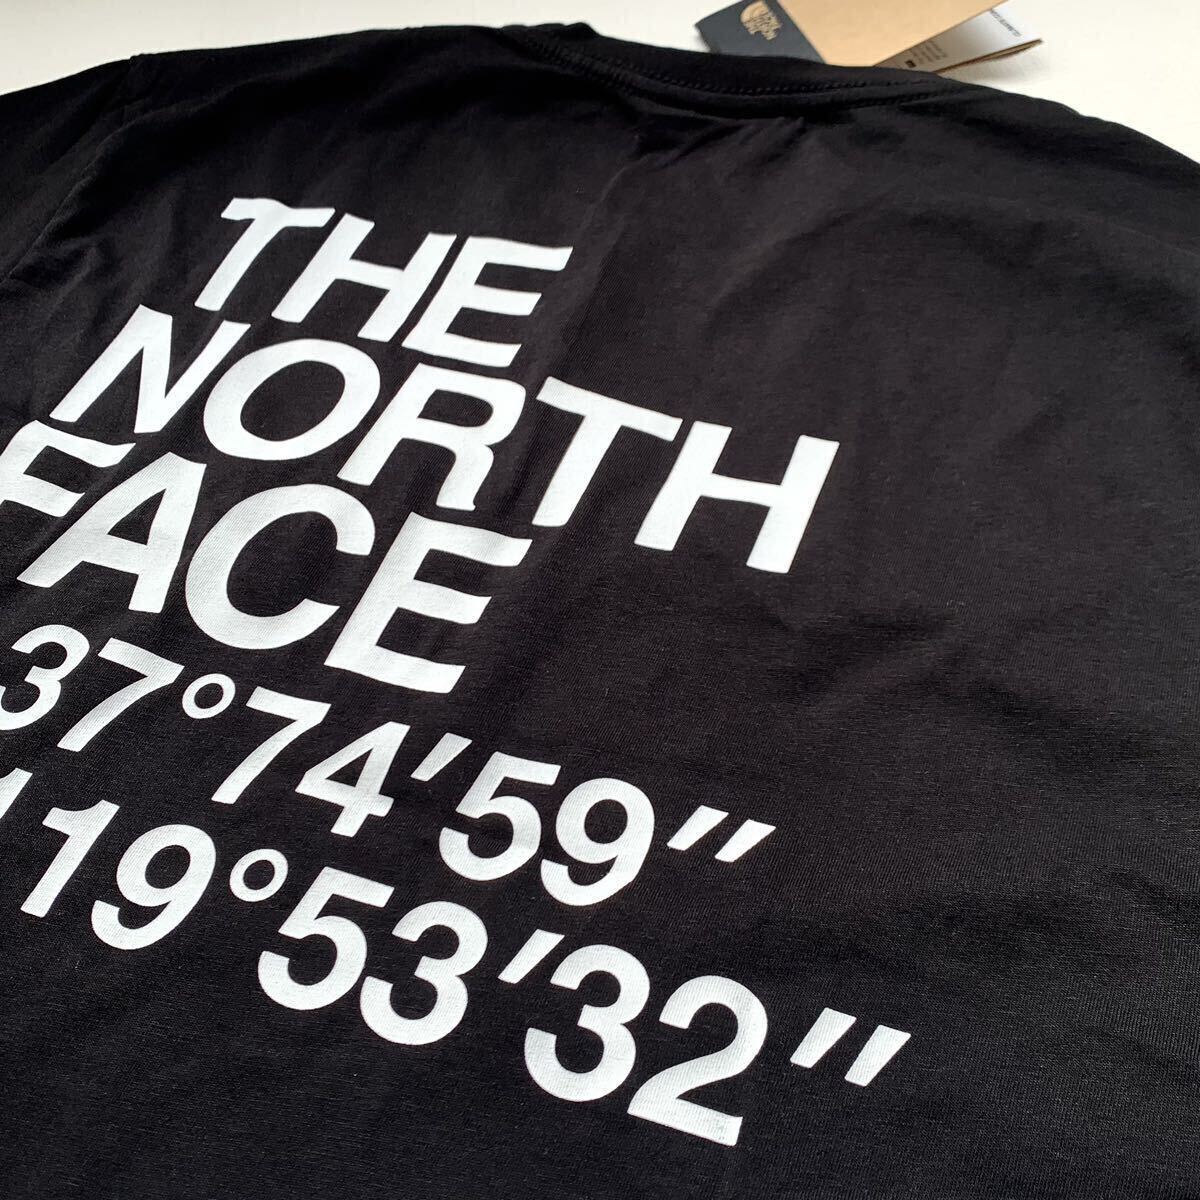 L 新品 ノースフェイス THE NORTH FACE COORDINATES TEE ロゴ ハーフドーム 座標 半袖 Tシャツ 黒 メンズ 海外企画 日本未入荷 送料無料_画像3